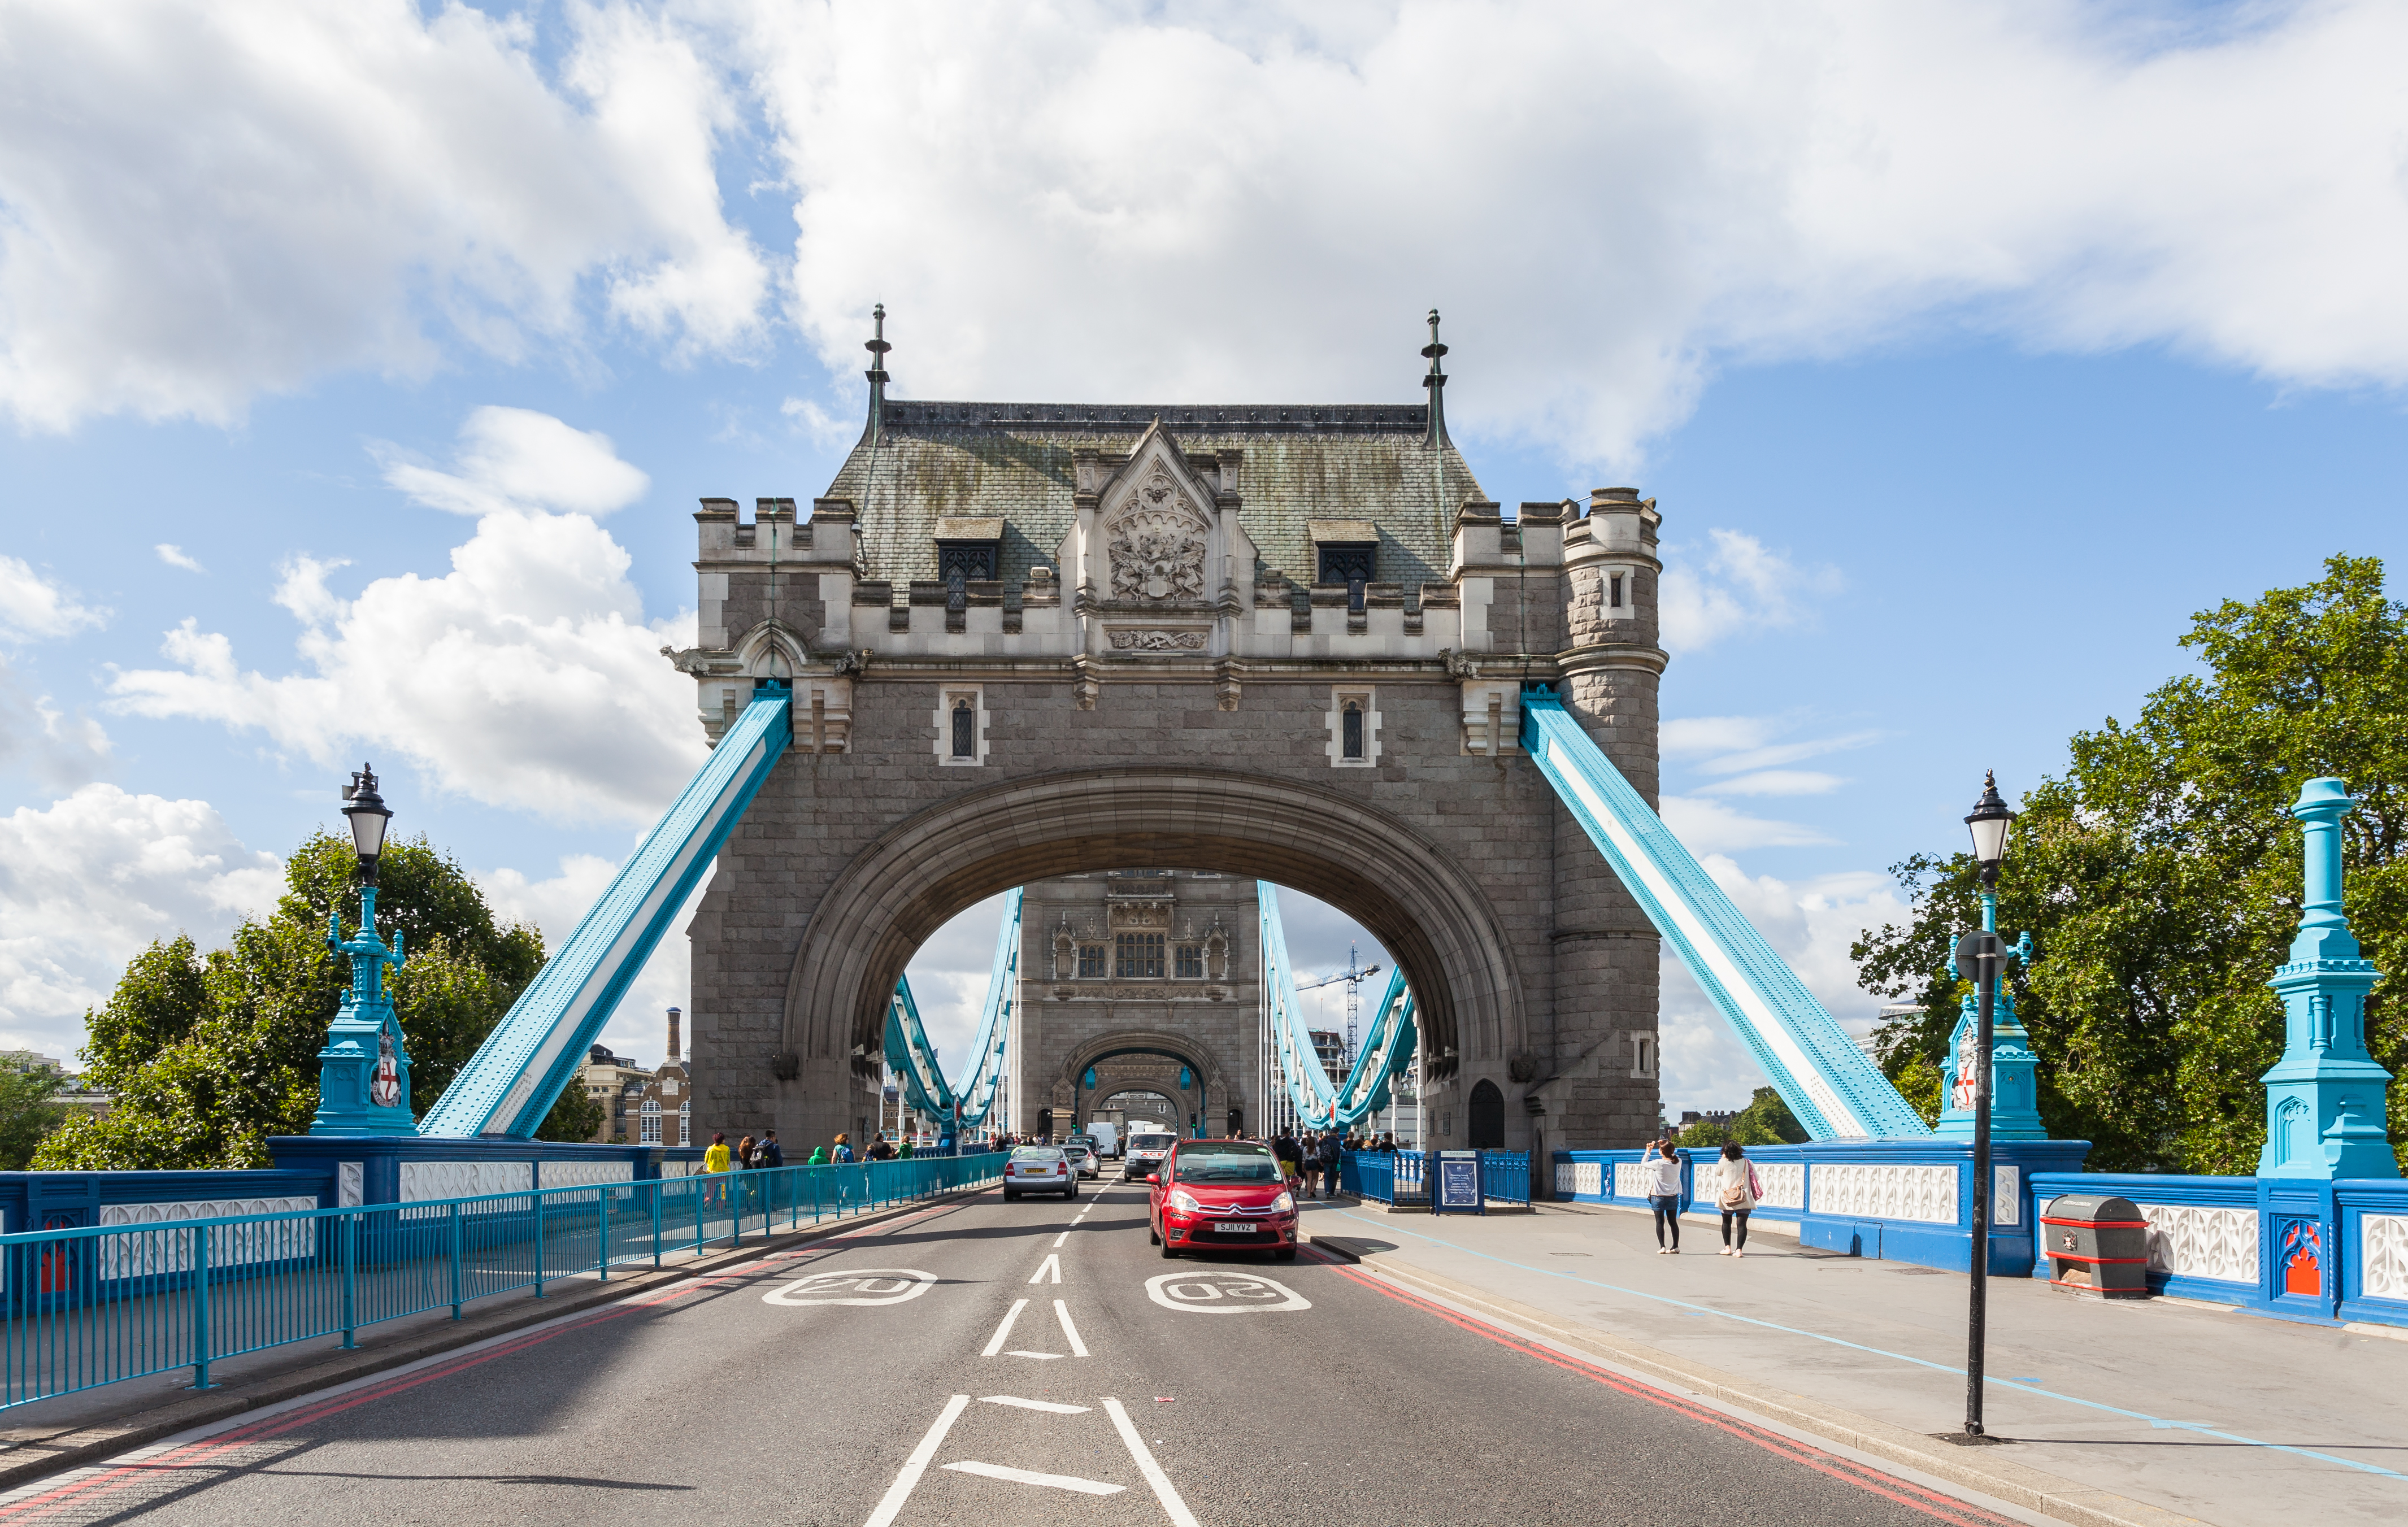 Puente de la Torre, Londres, Inglaterra, 2014-08-11, DD 074